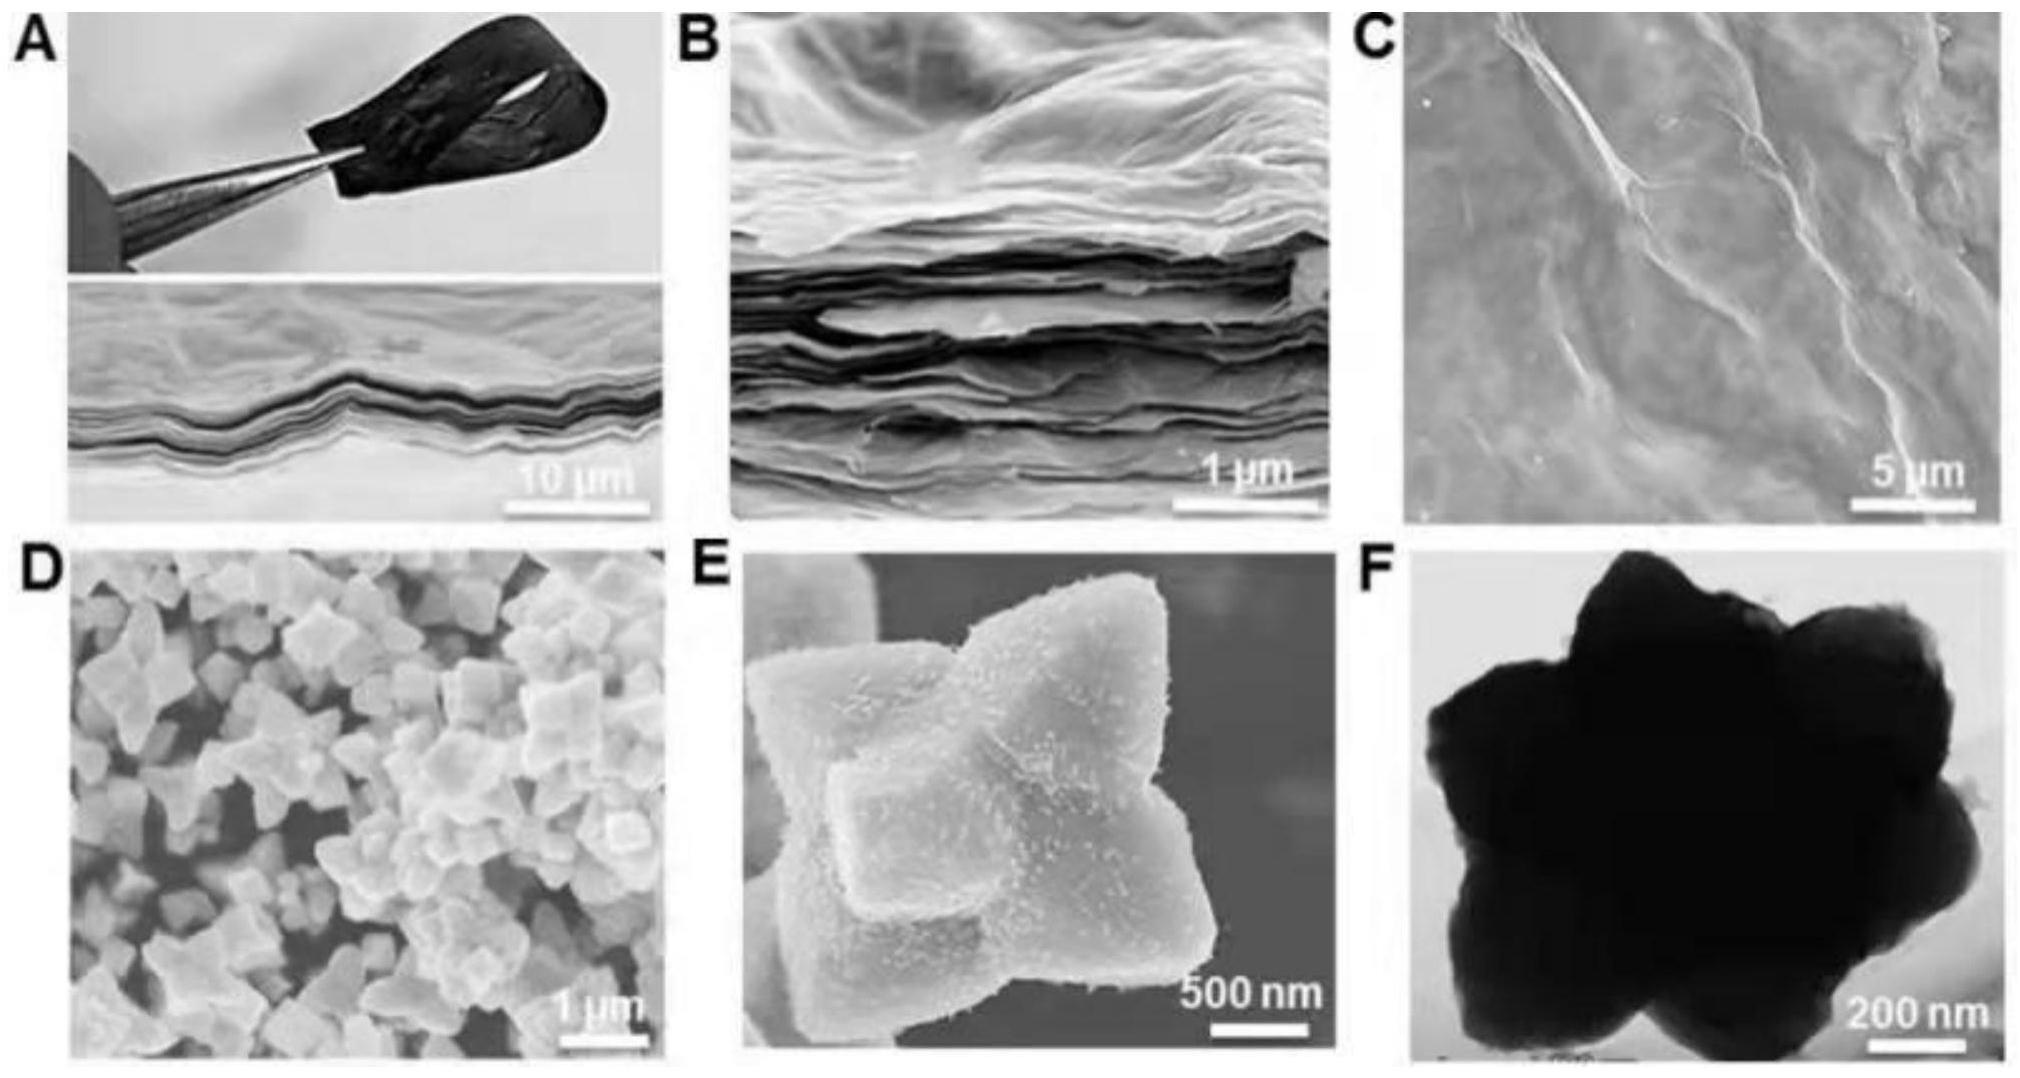 还原氧化石墨烯纸负载六角星形Cu2O-CuO纳米晶体杂化纸电极的制备方法及其应用